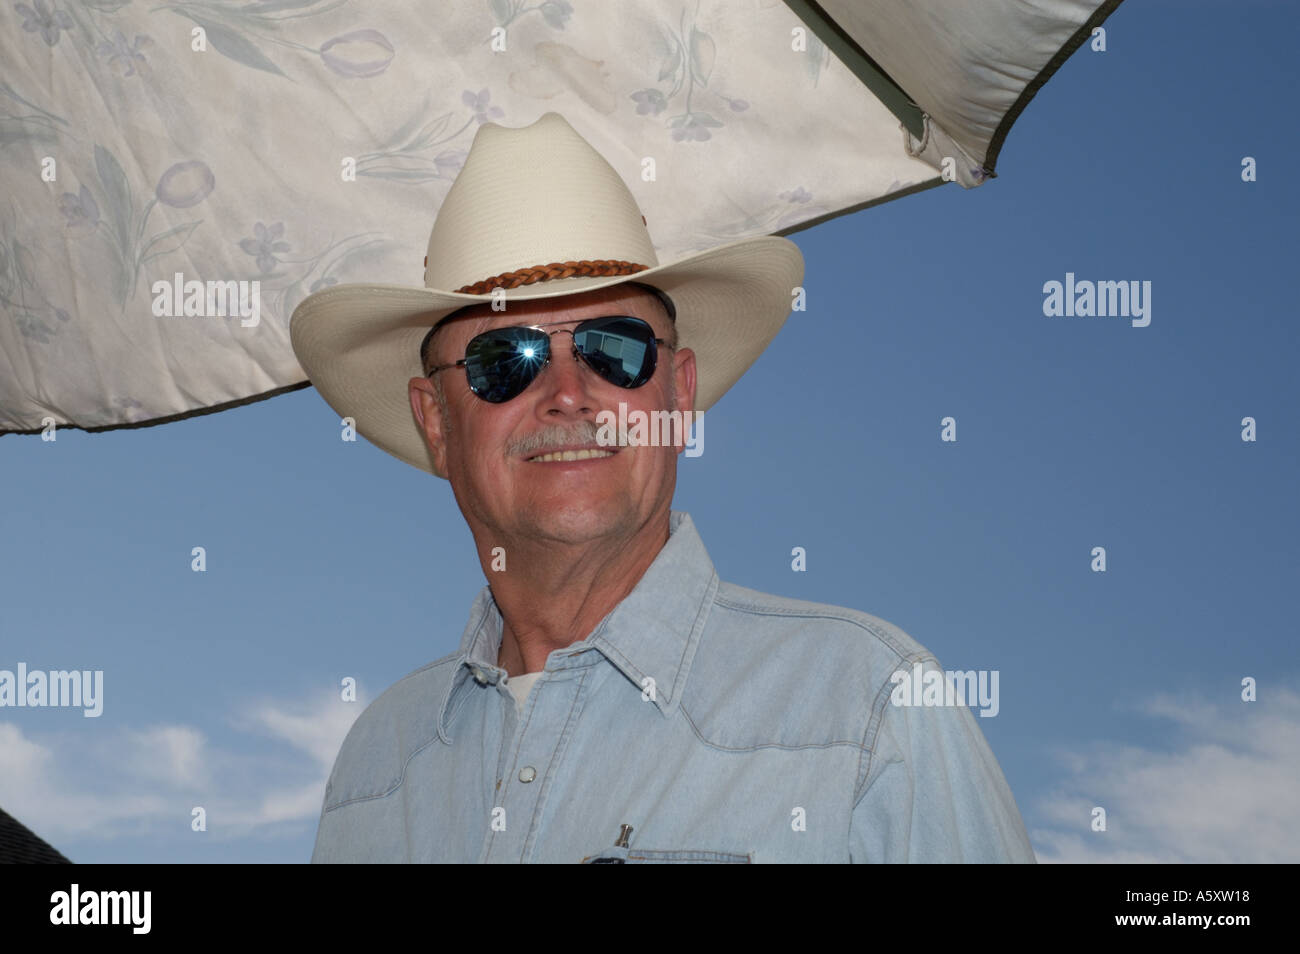 L'Homme à lunettes de soleil et chapeau de cowboy contre un ciel bleu et  ombrelle Photo Stock - Alamy